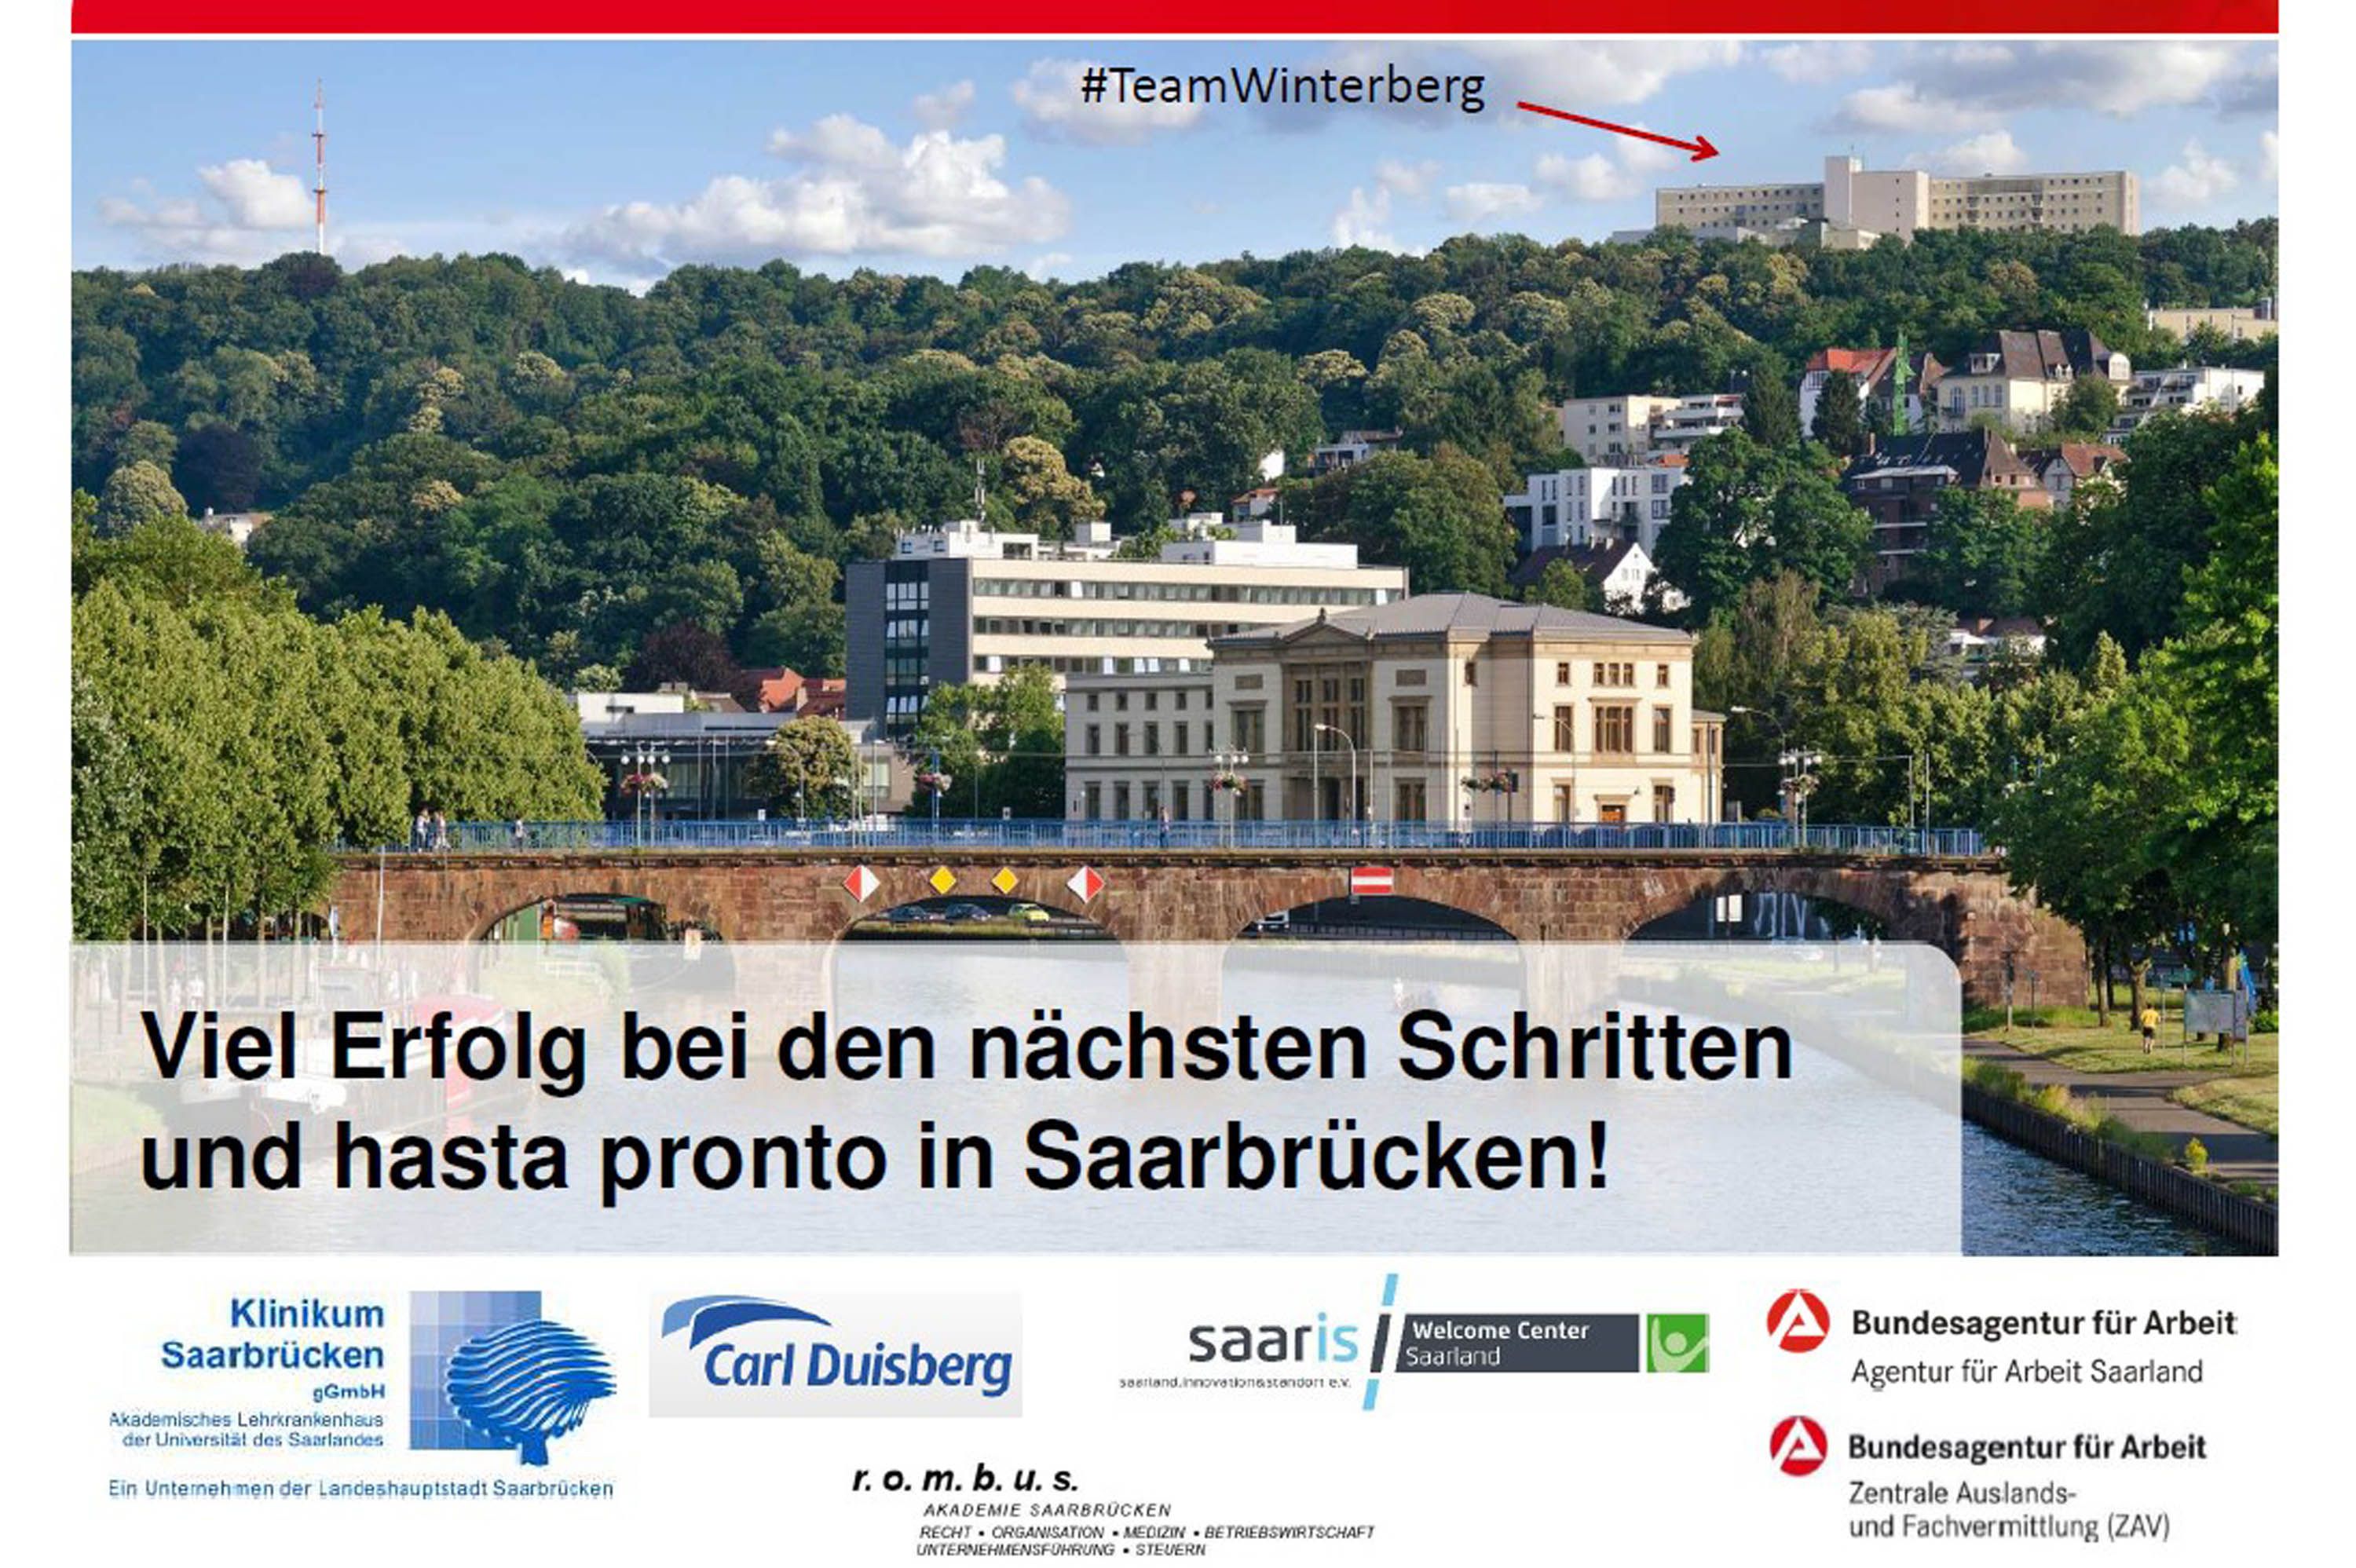 Symbolbild: Ansicht des Klinikums Saarbrücken von der Stadt - Viel Erfolg bei den nächsten Schritten und hasta pronto in Saarbrücken, 